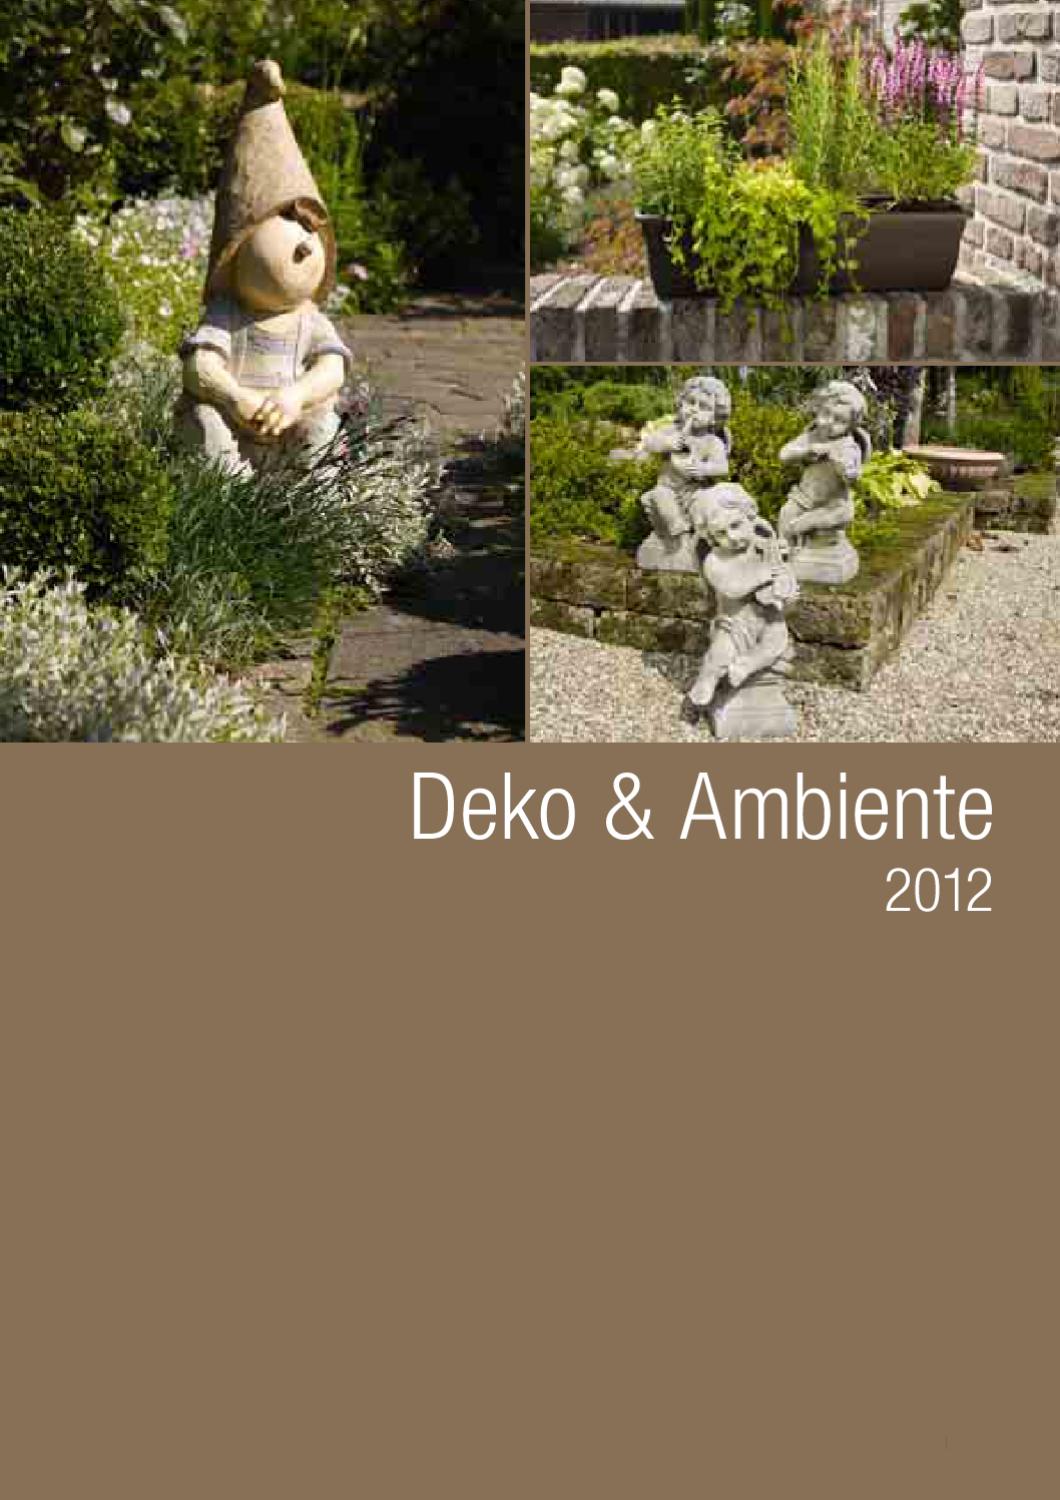 Roststecker Garten Best Of Deko & Ambiente by Mats andersson issuu